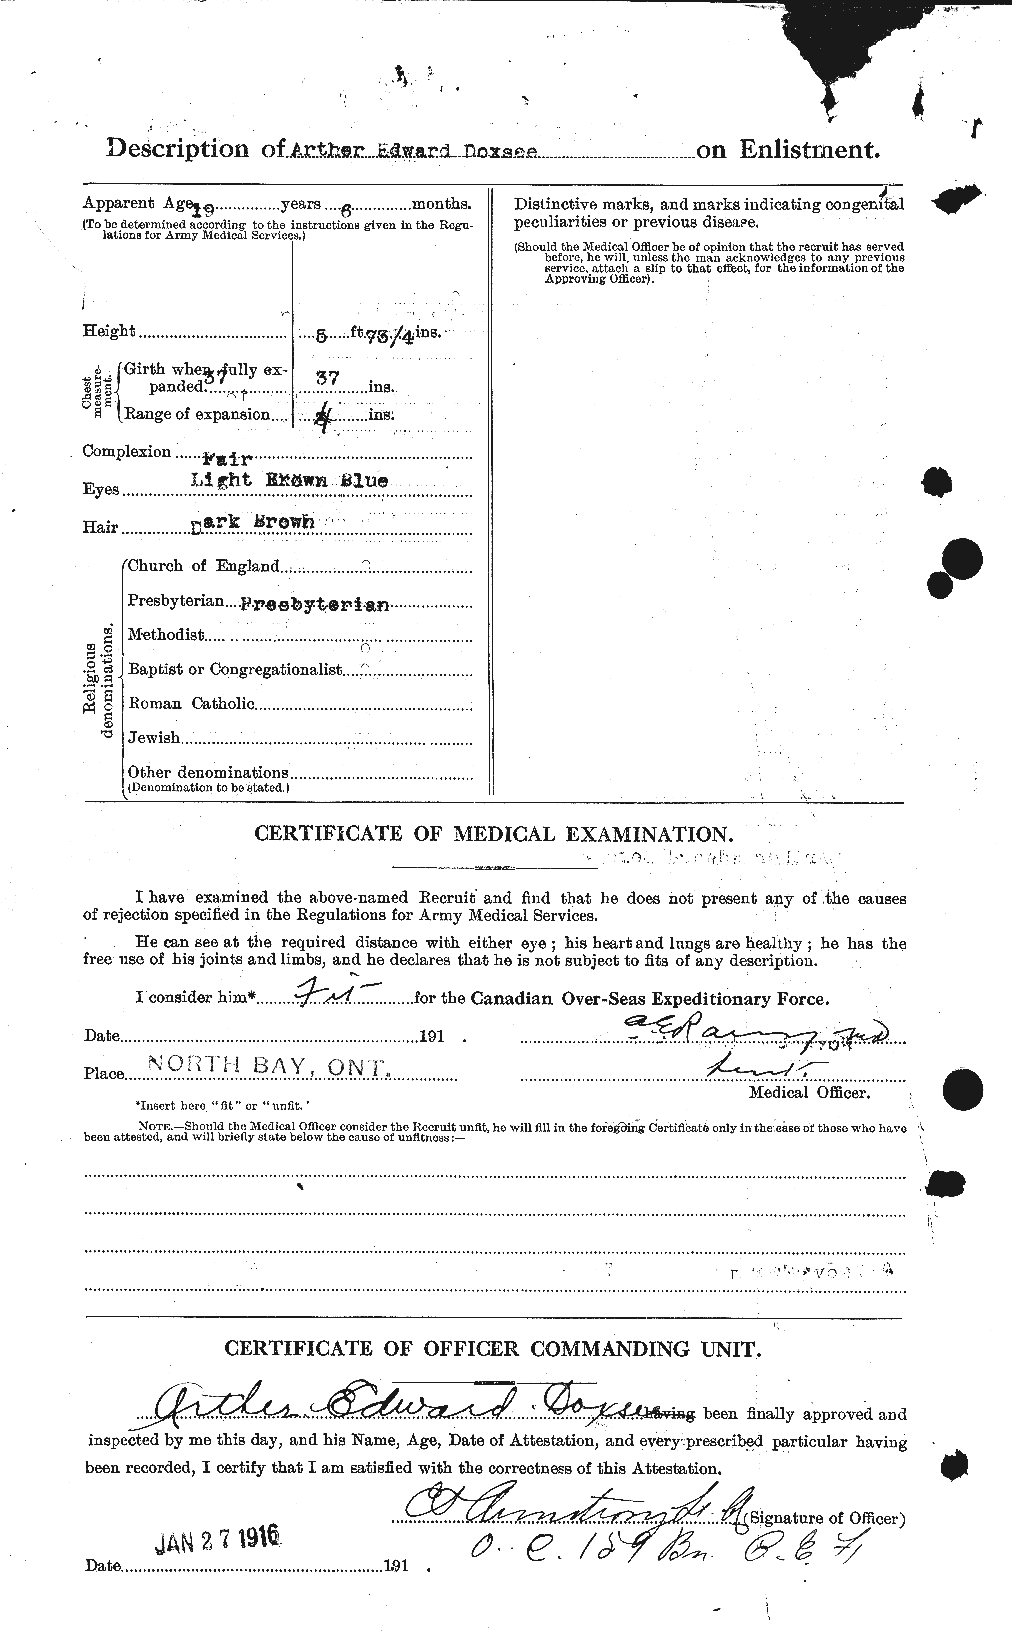 Dossiers du Personnel de la Première Guerre mondiale - CEC 298368b